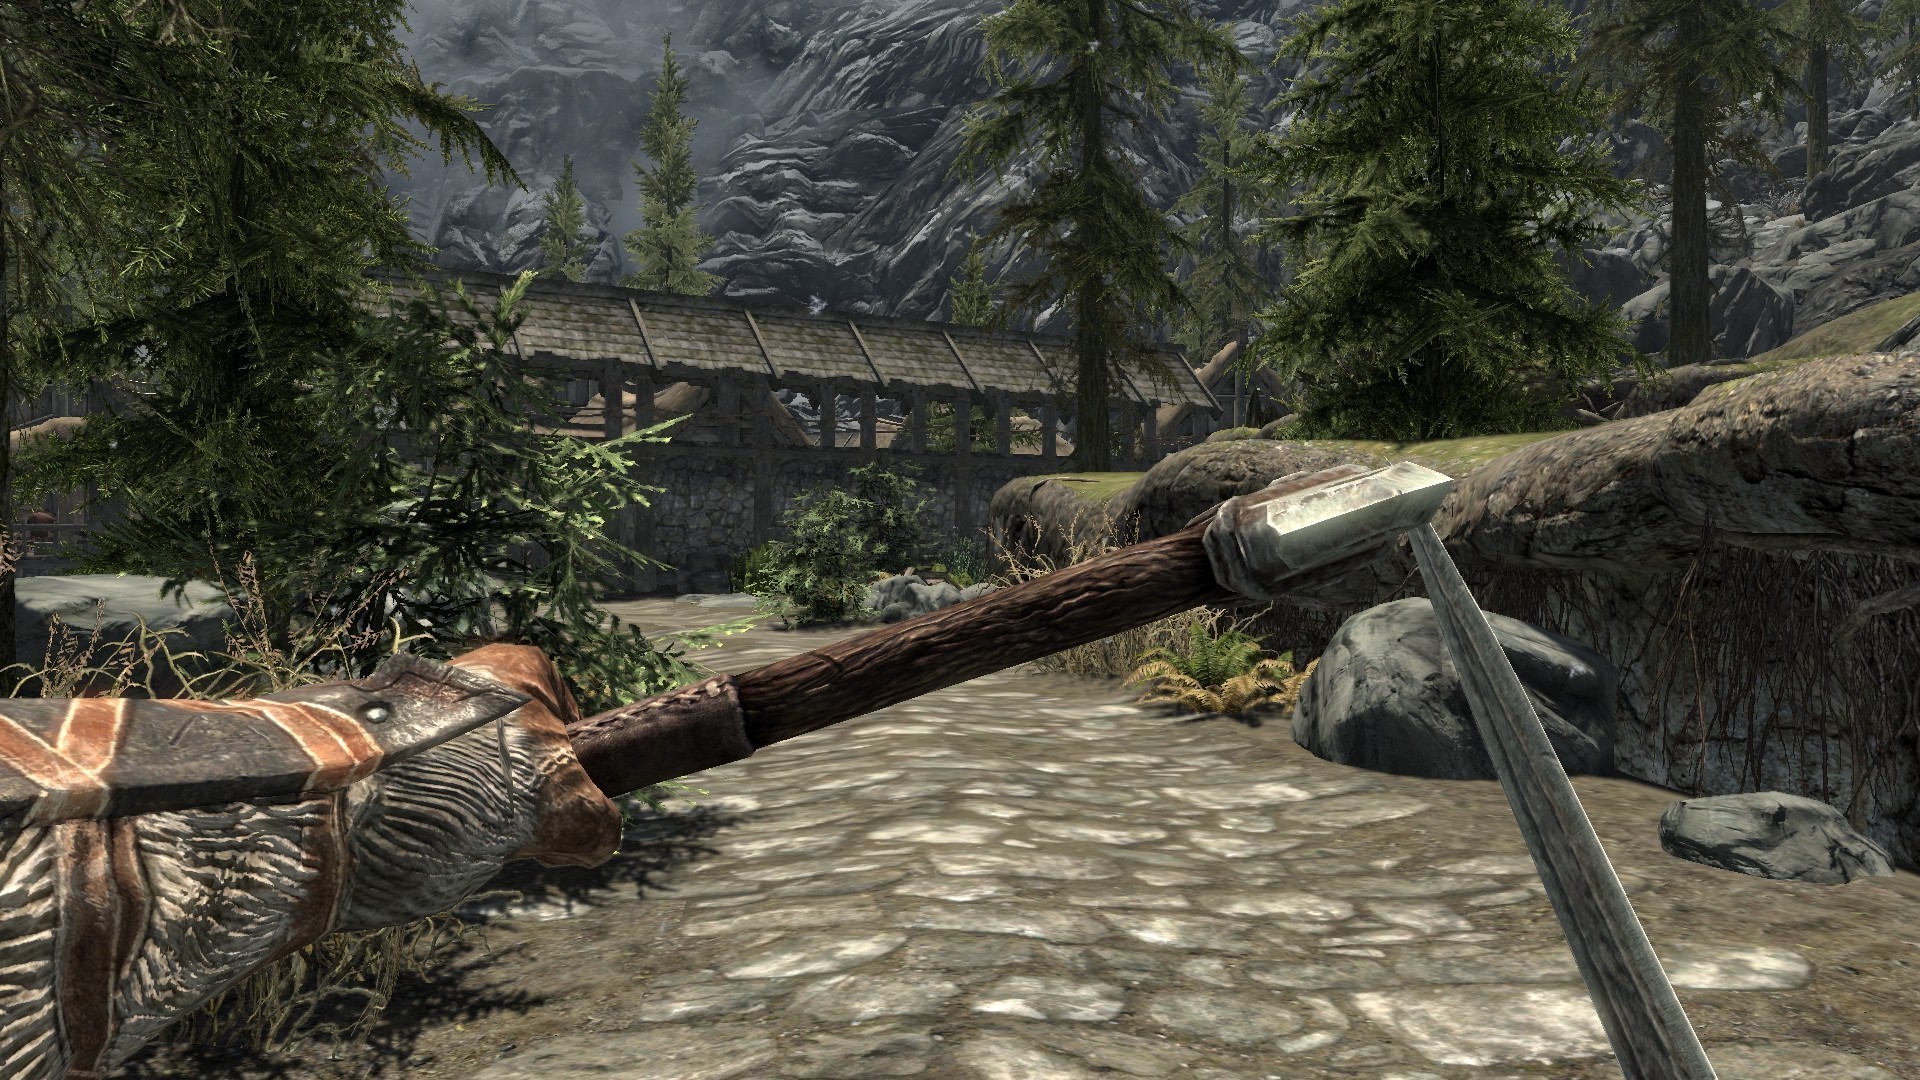 Skyrim collections. Моды для Elder Scrolls 5: Skyrim оружие. Скайрим 5 оружие. Скайрим мод пушка. Скайрим мод парные клинки.